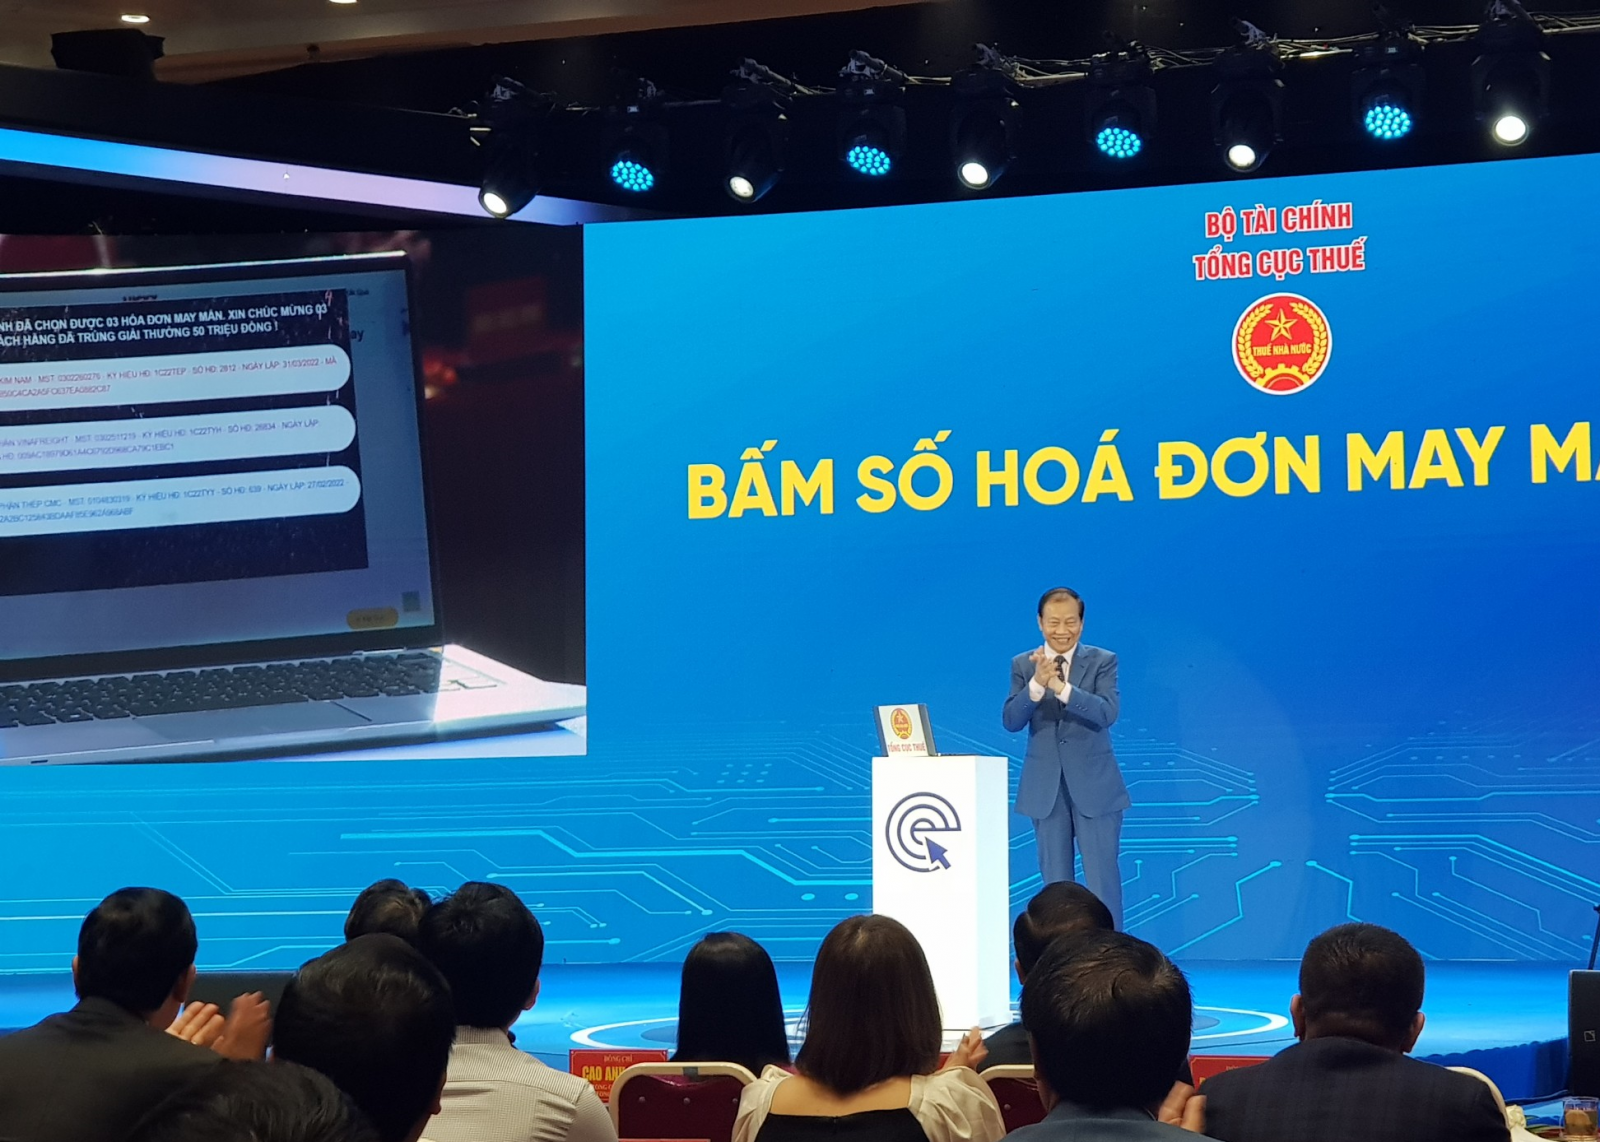 Ông Hoàng Quang Phòng, Phó Chủ tịch VCCI bấm số hóa đơn may mắn lần 2 tại Lễ công bố hệ thống hóa đơn điện tử toàn quốc